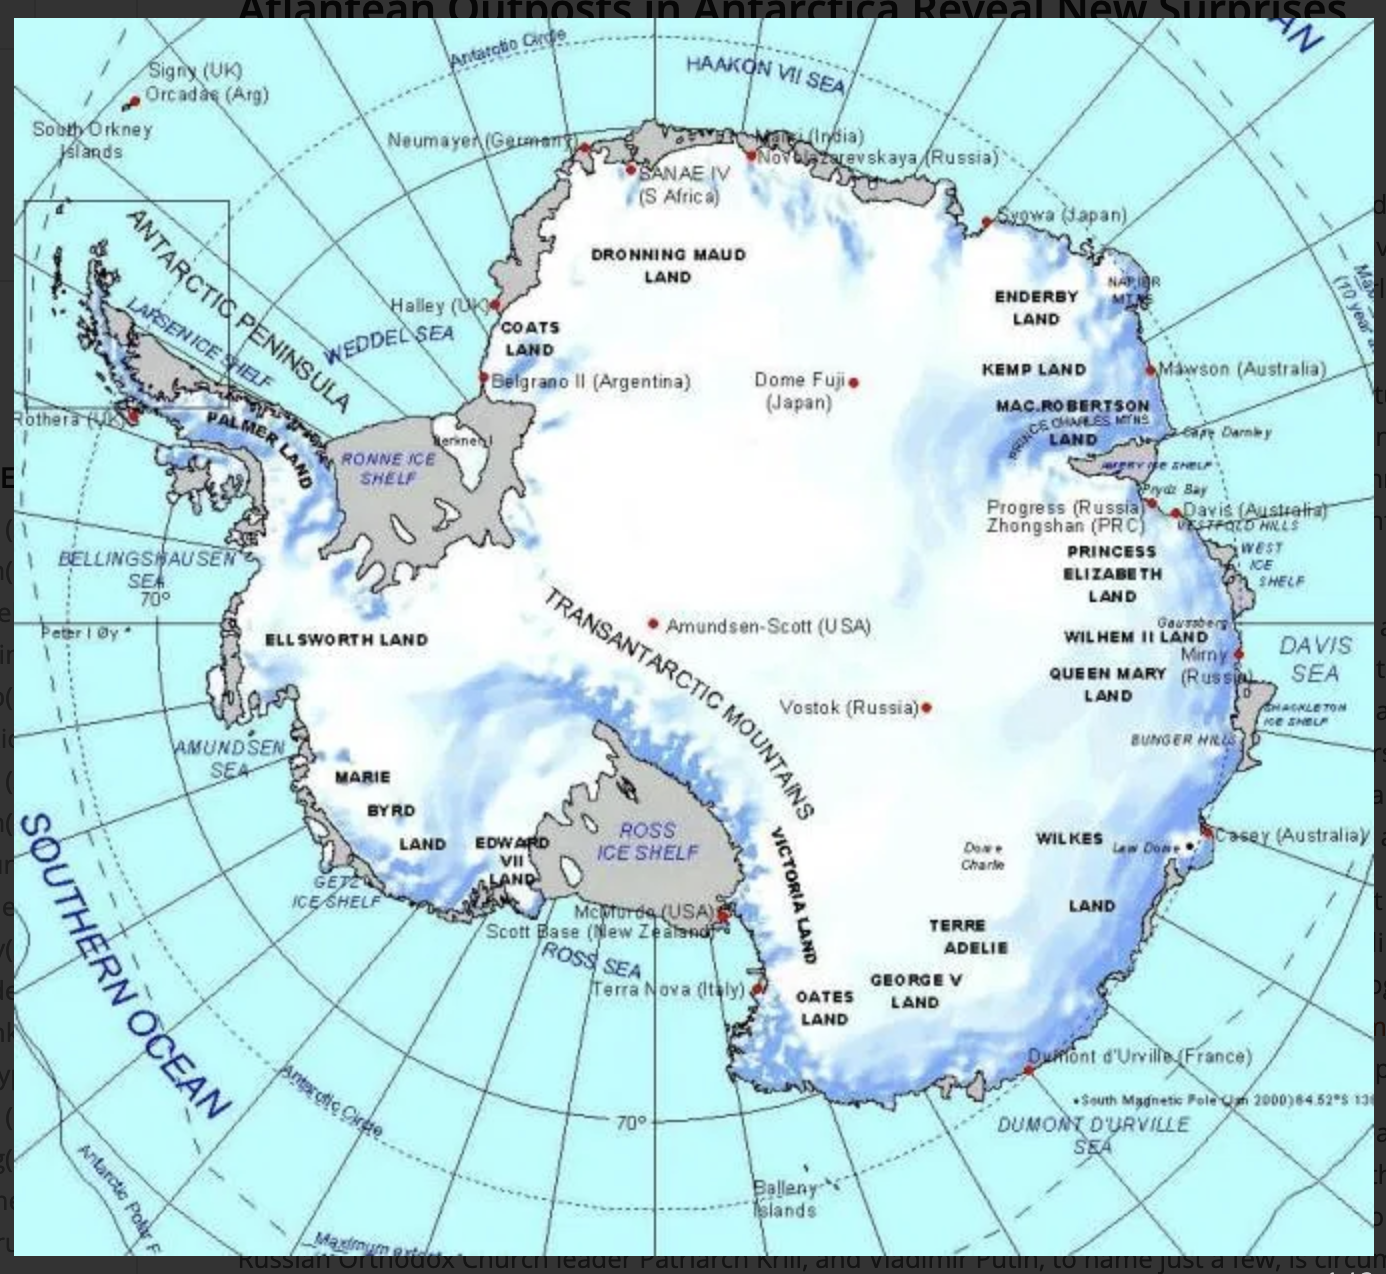 Местоположение антарктиды. Полуостров Челюскинцев на карте Антарктиды. Остров Петра 1 на карте Антарктиды. Полюс недоступности в Антарктиде на карте. Долина МГГ на карте Антарктиды.